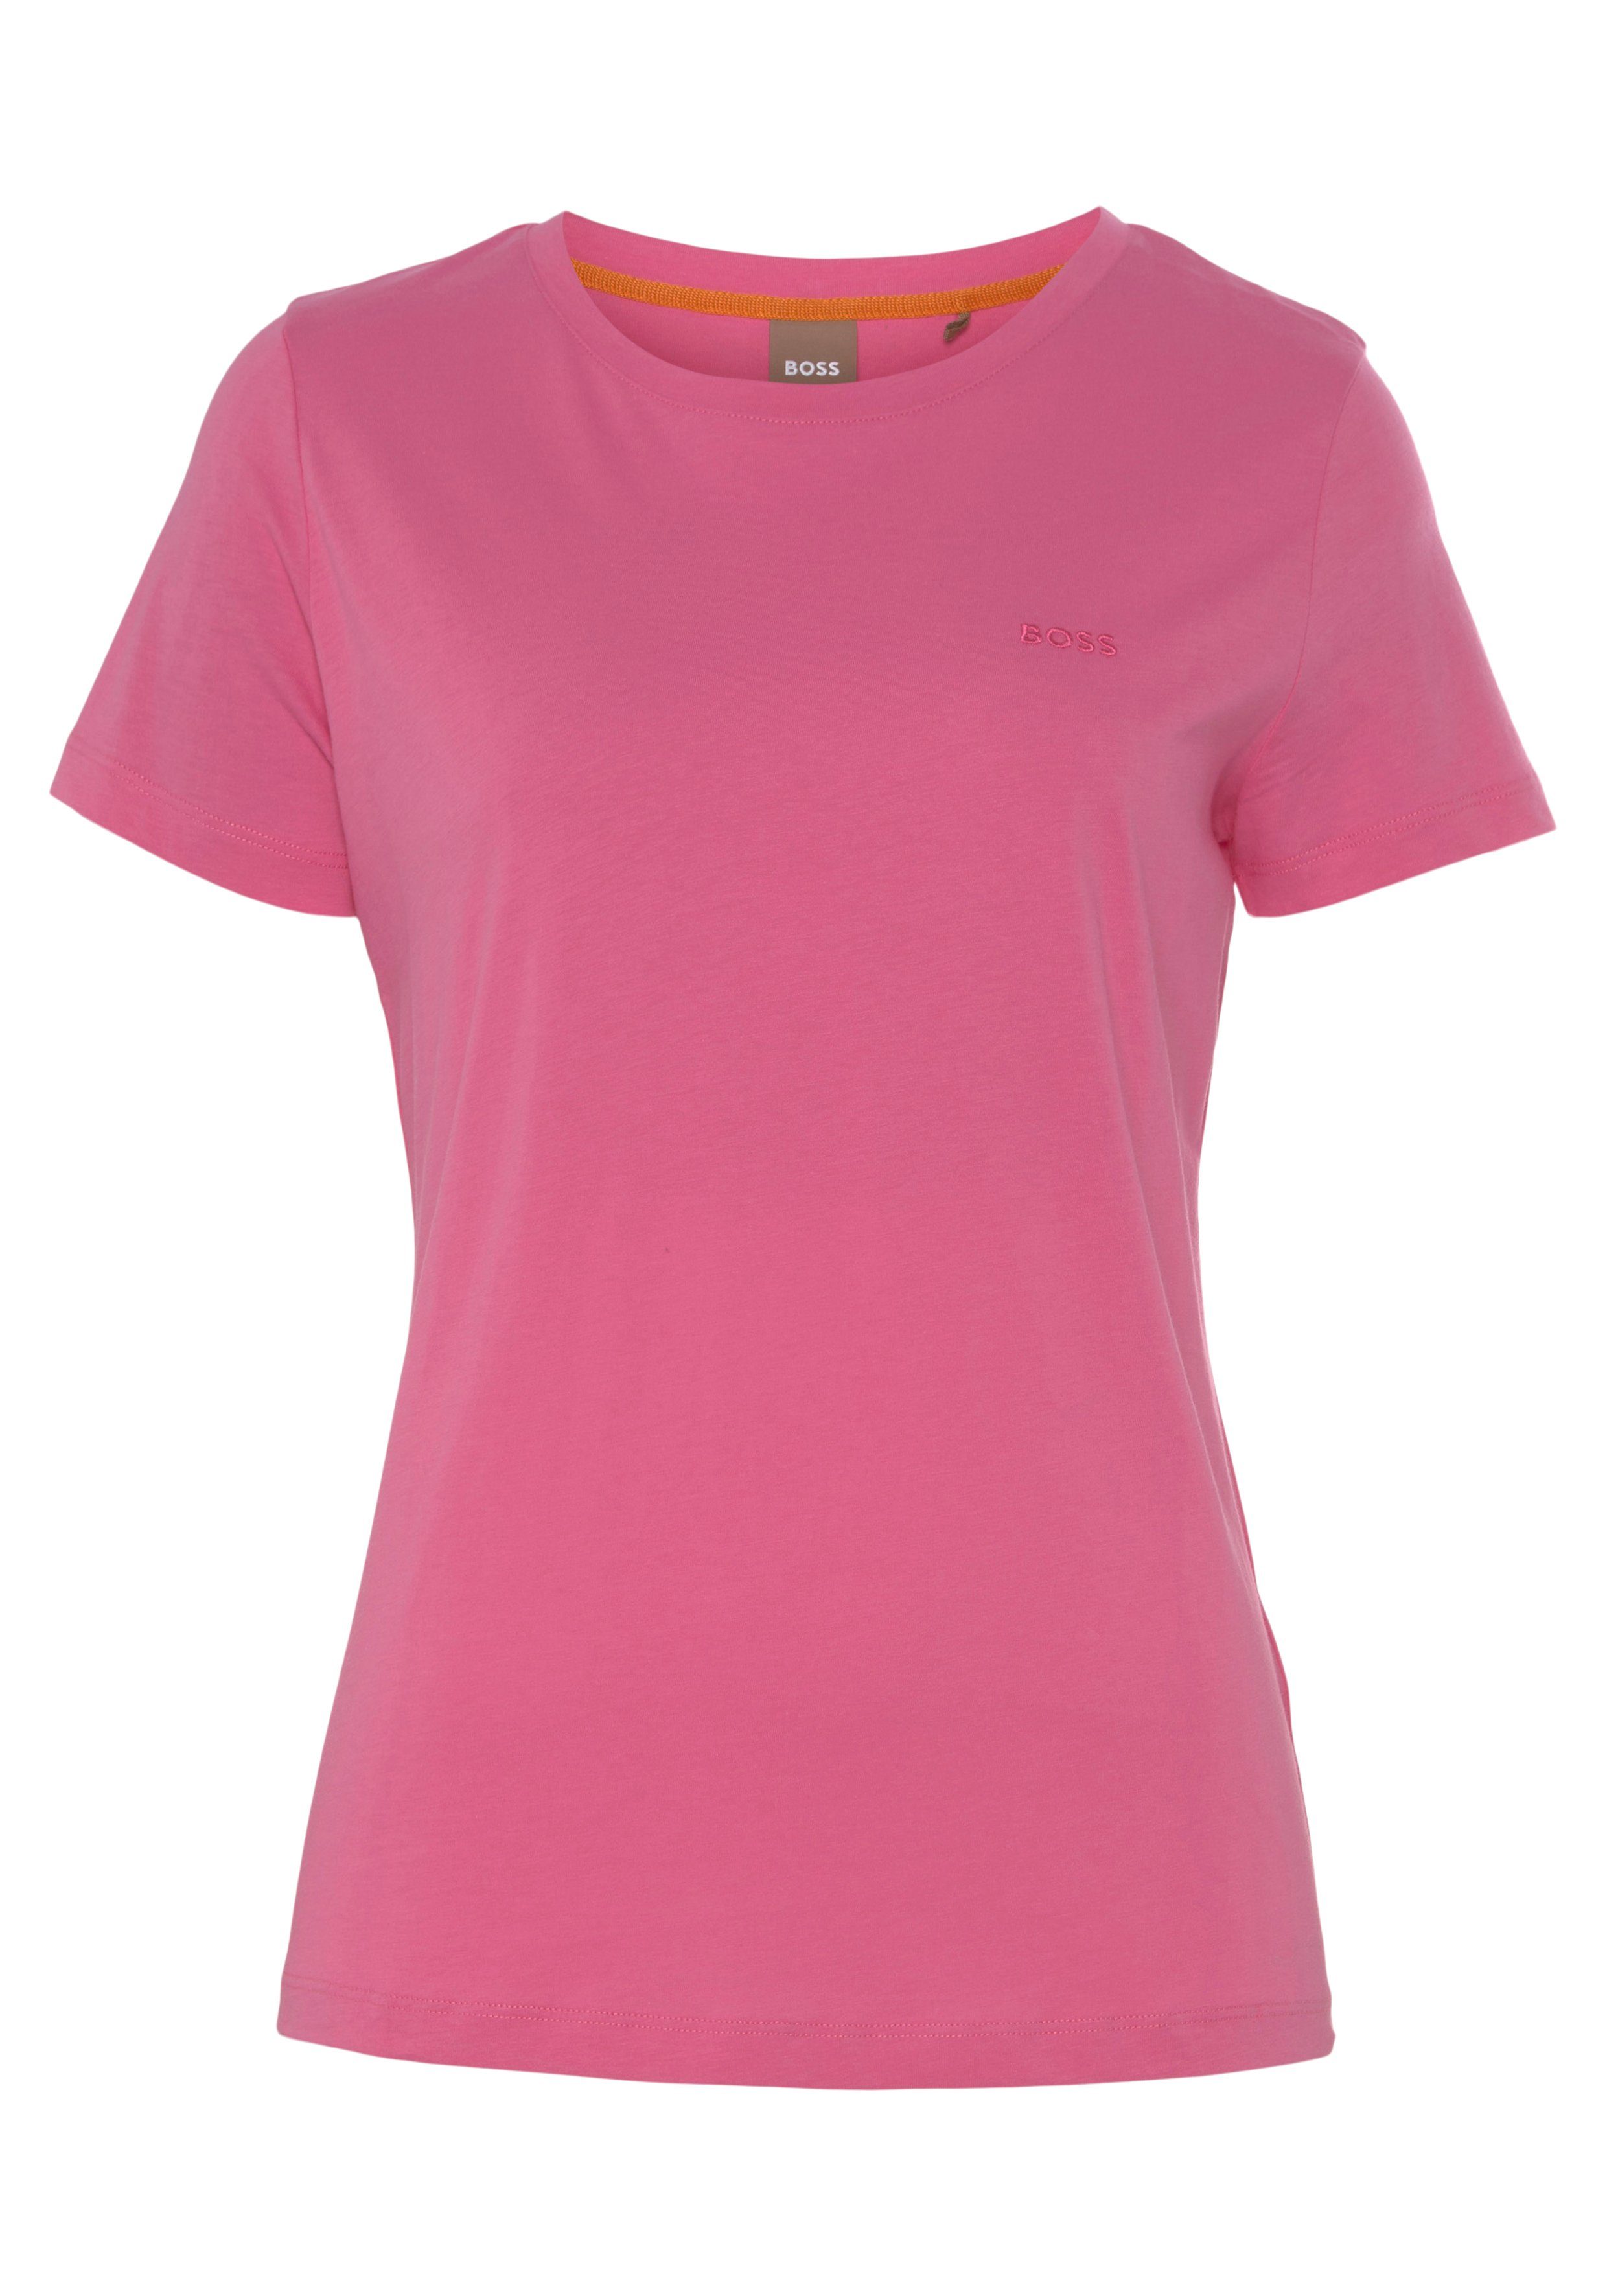 BOSS ORANGE T-Shirt Qualität Stoff, medium_pink1 Premium weicher, hochwertiger mit Logostickerei